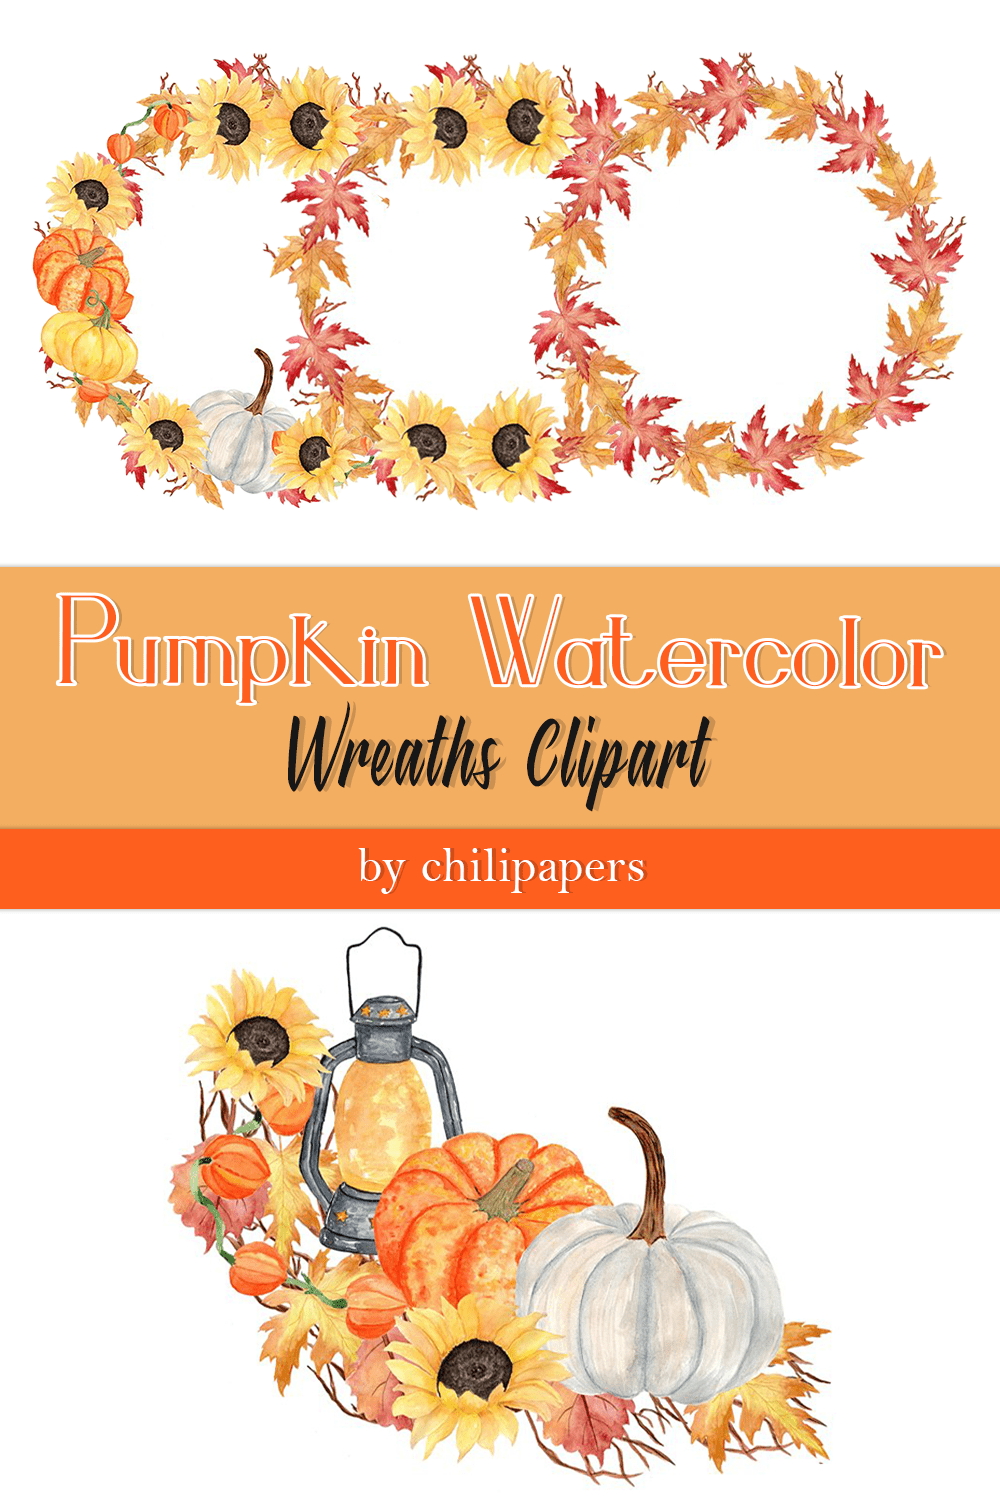 pumpkin watercolor wreaths clipart pinterest